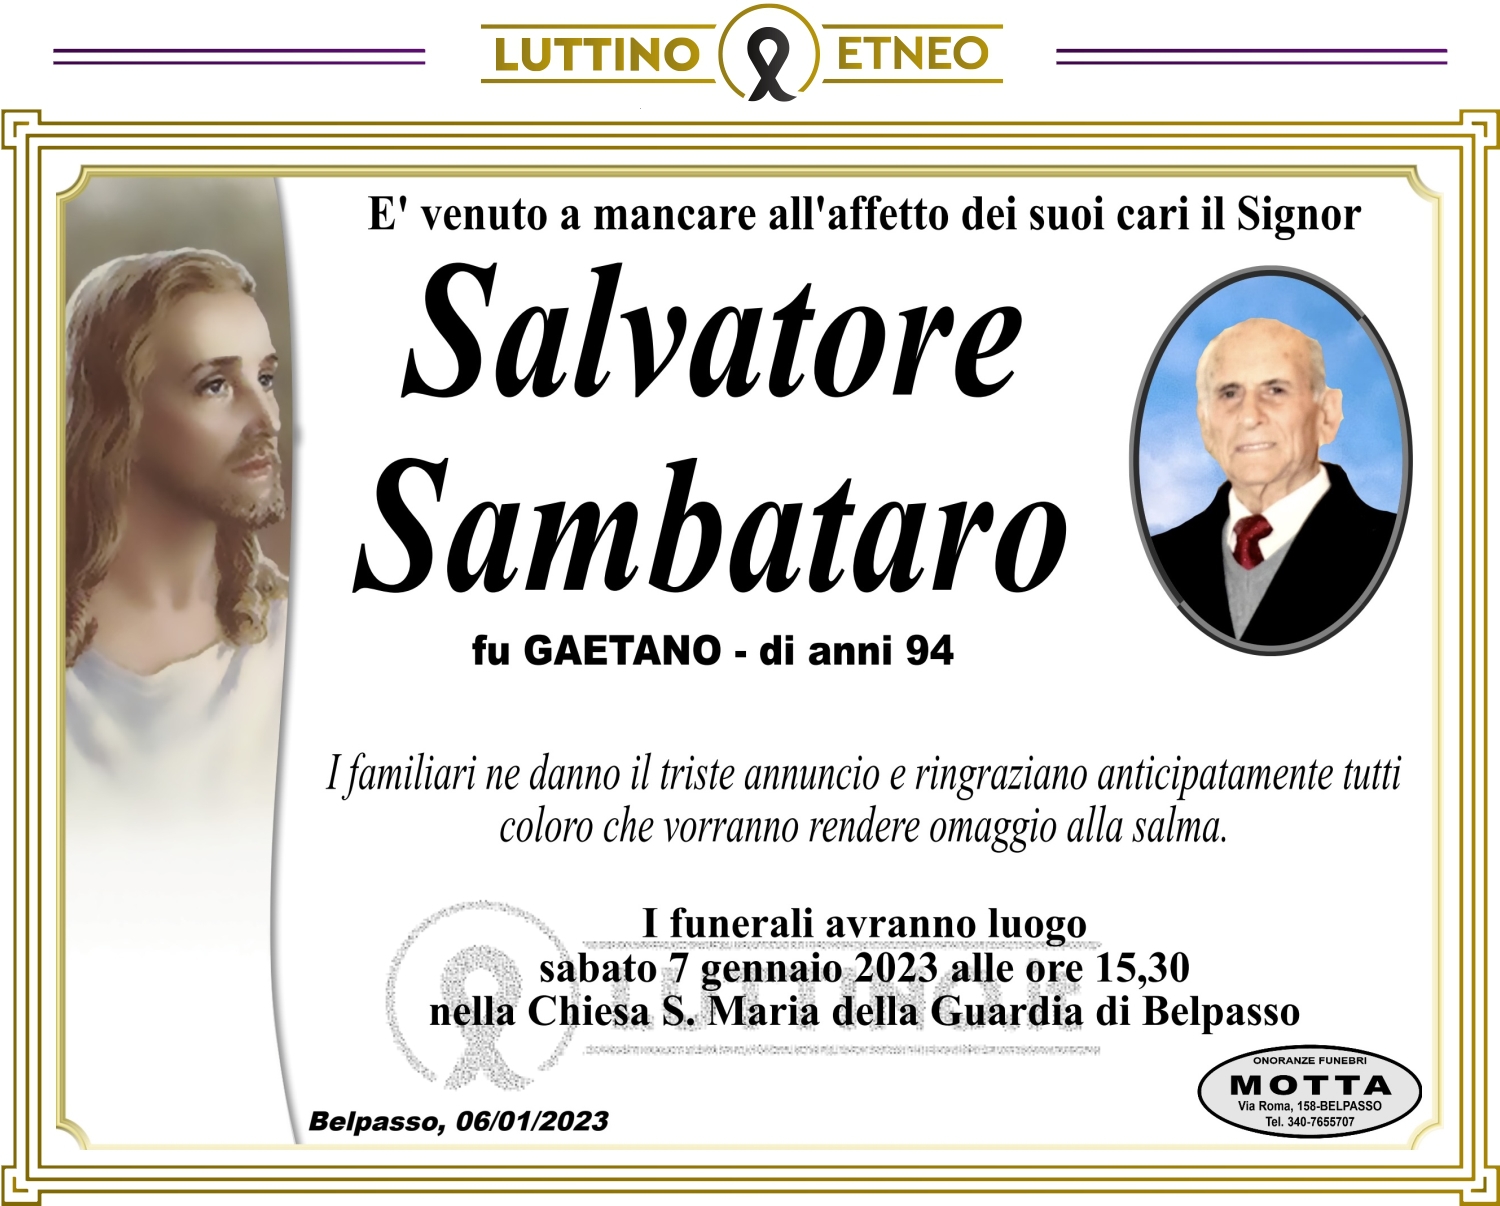 Salvatore Sambataro